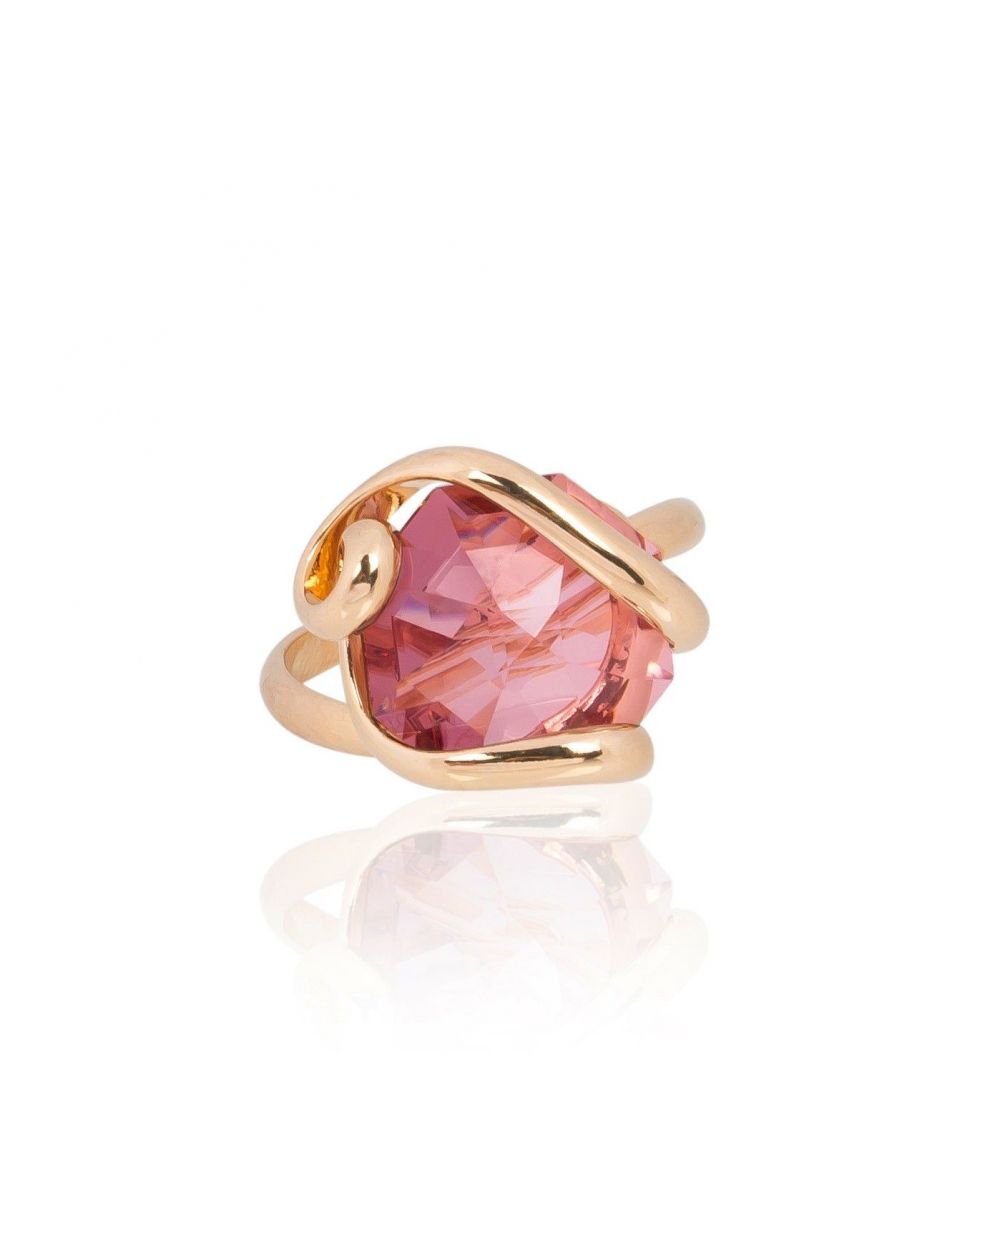 Andrea Marazzini bijoux - Bague cristal Swarovski Octagon Pink Antique